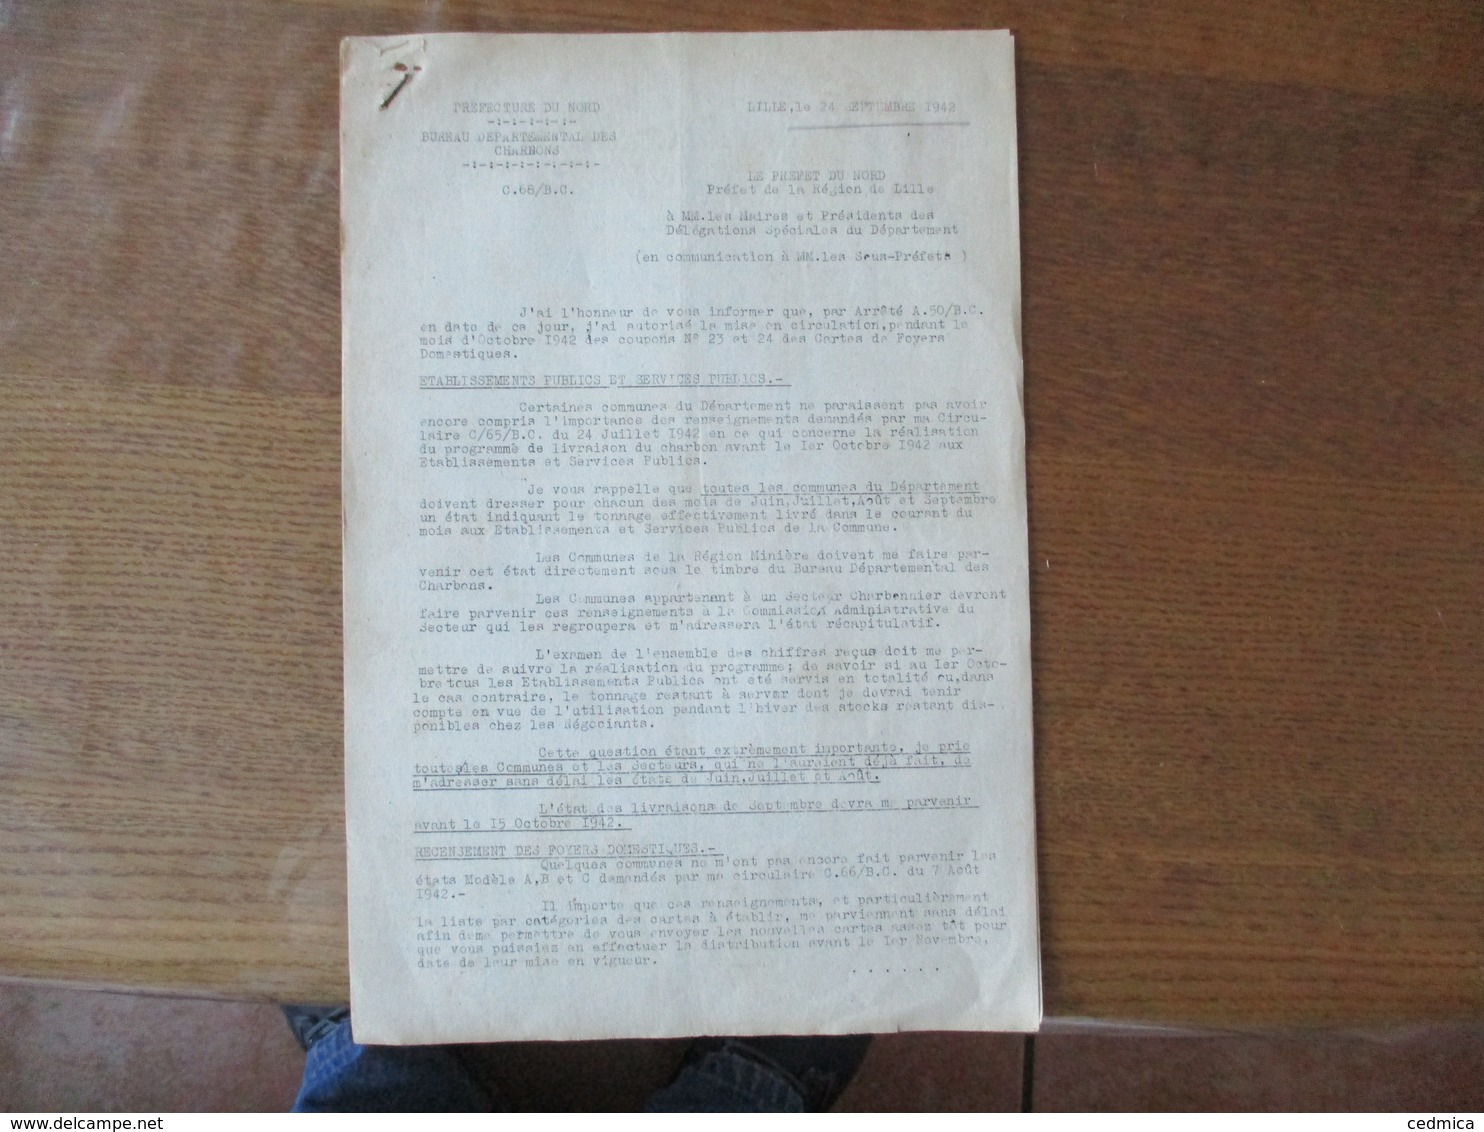 LILLE LE 24 SEPTEMBRE 1942 BUREAU DEPARTEMENTAL DES CHARBONS  NOTE DU PREFET DU NORD F.CARLES 5 PAGES - Historical Documents